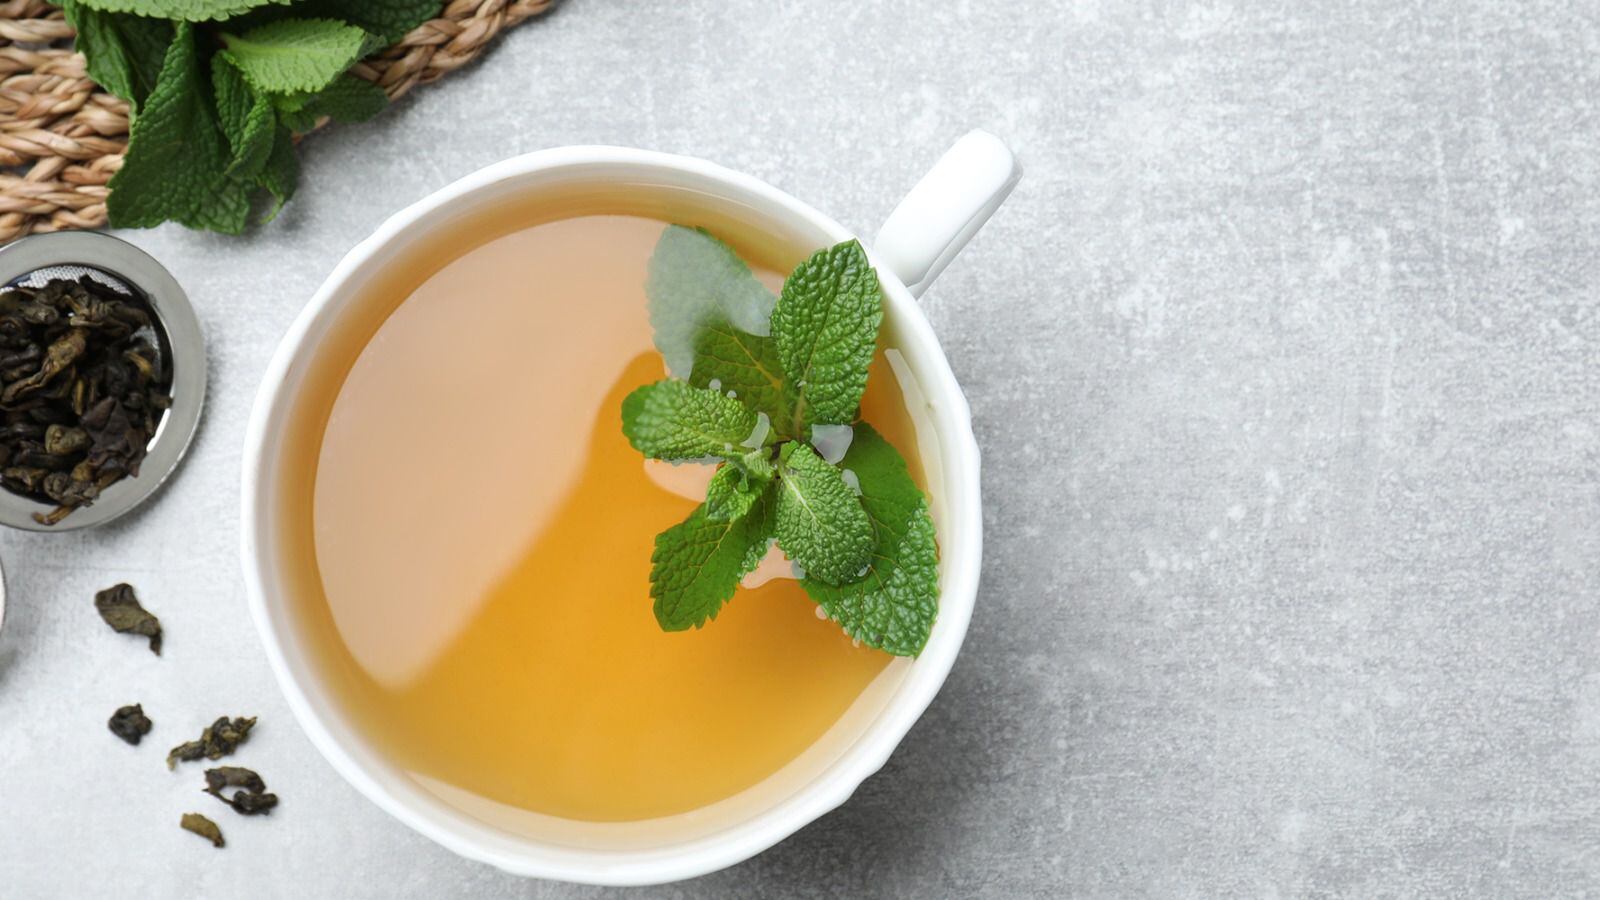 Tomar té de hierbabuena puede traer beneficios a tu salud.  (Foto: Shutterstock)